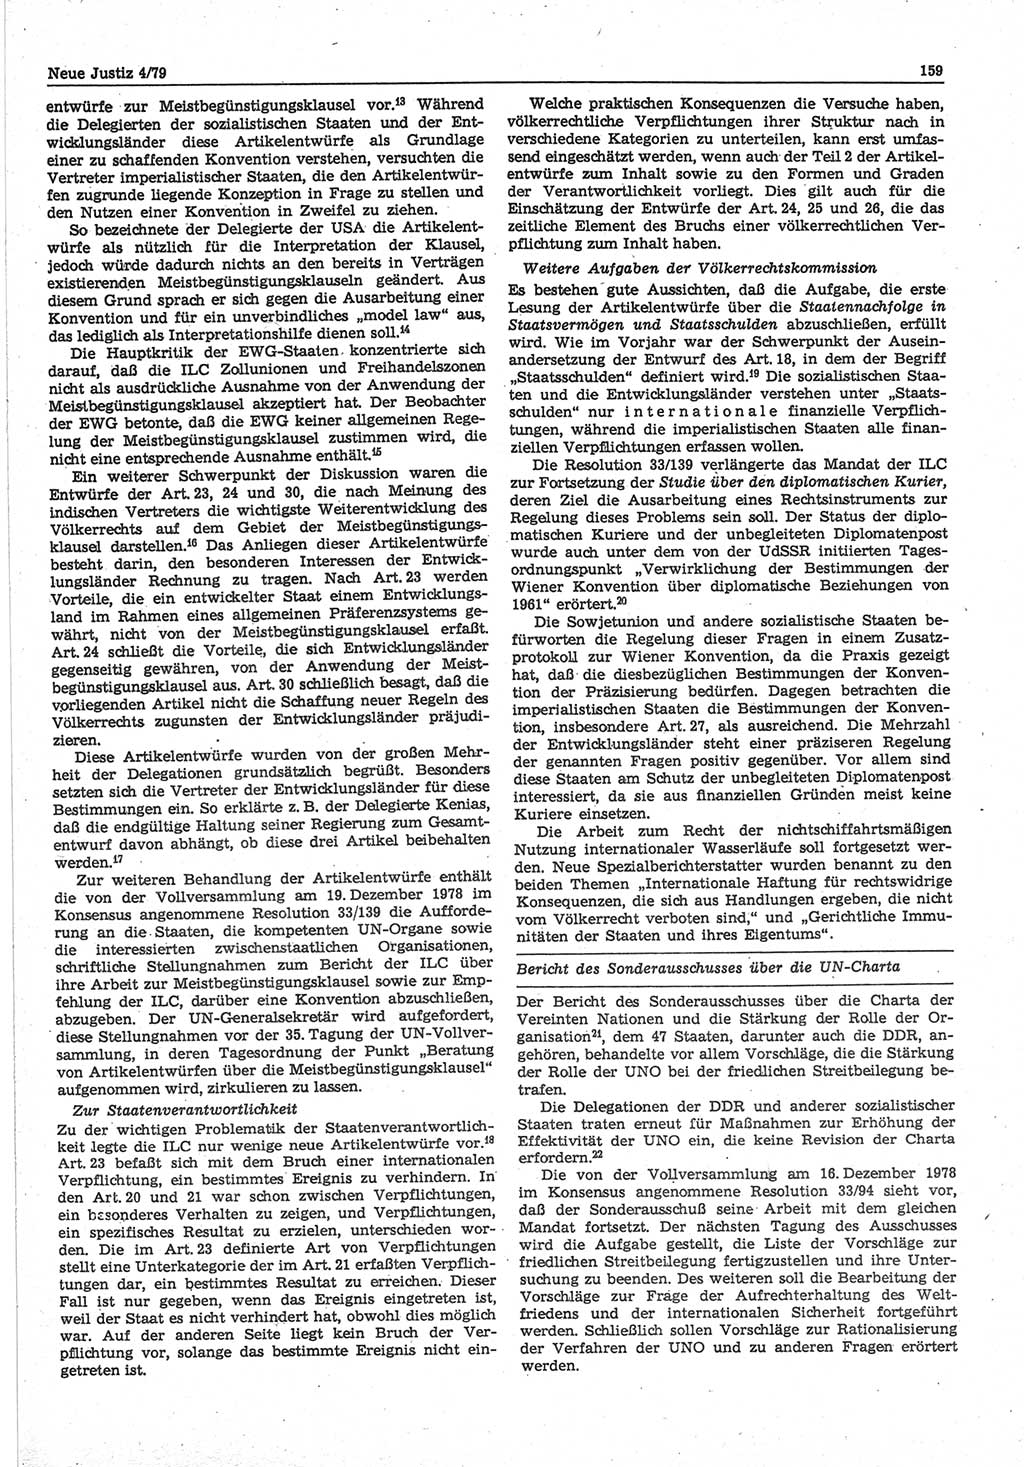 Neue Justiz (NJ), Zeitschrift für sozialistisches Recht und Gesetzlichkeit [Deutsche Demokratische Republik (DDR)], 33. Jahrgang 1979, Seite 159 (NJ DDR 1979, S. 159)